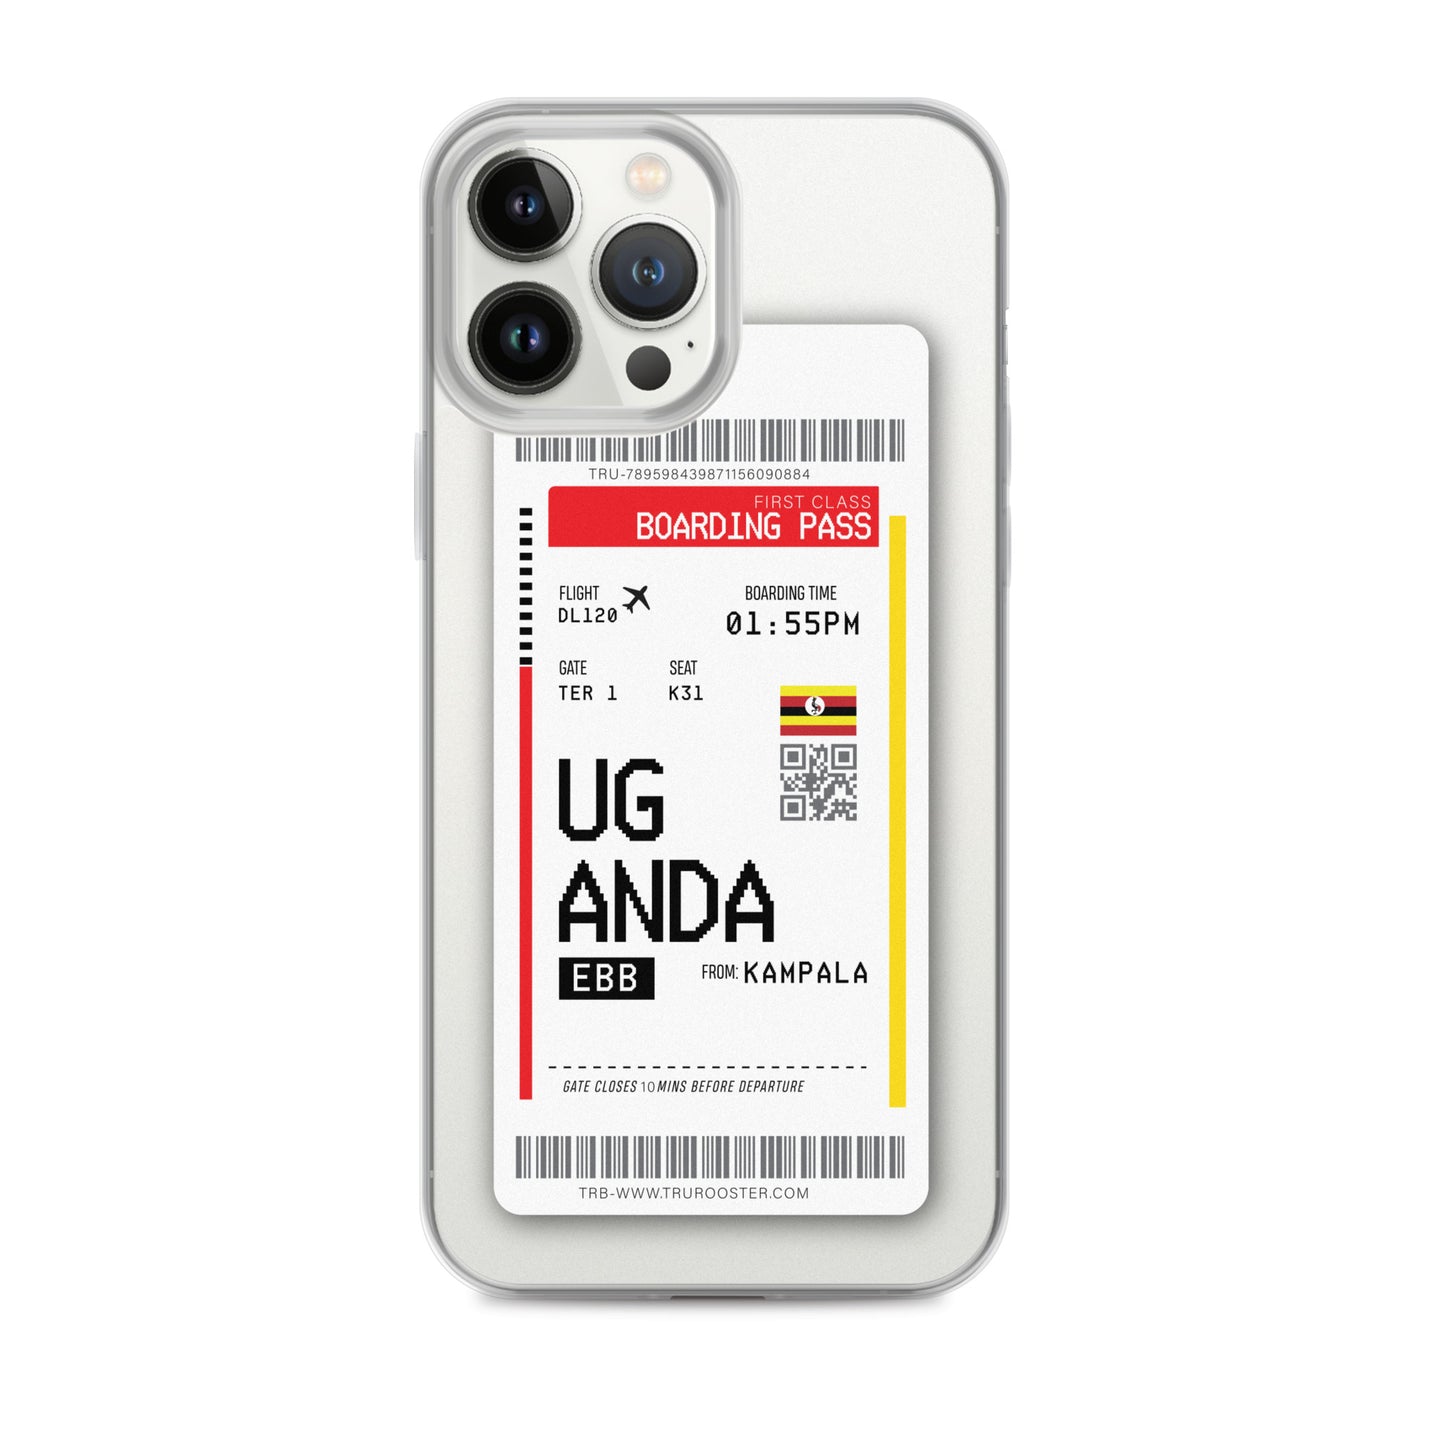 Uganda Transit Boarding Pass iPhone Case